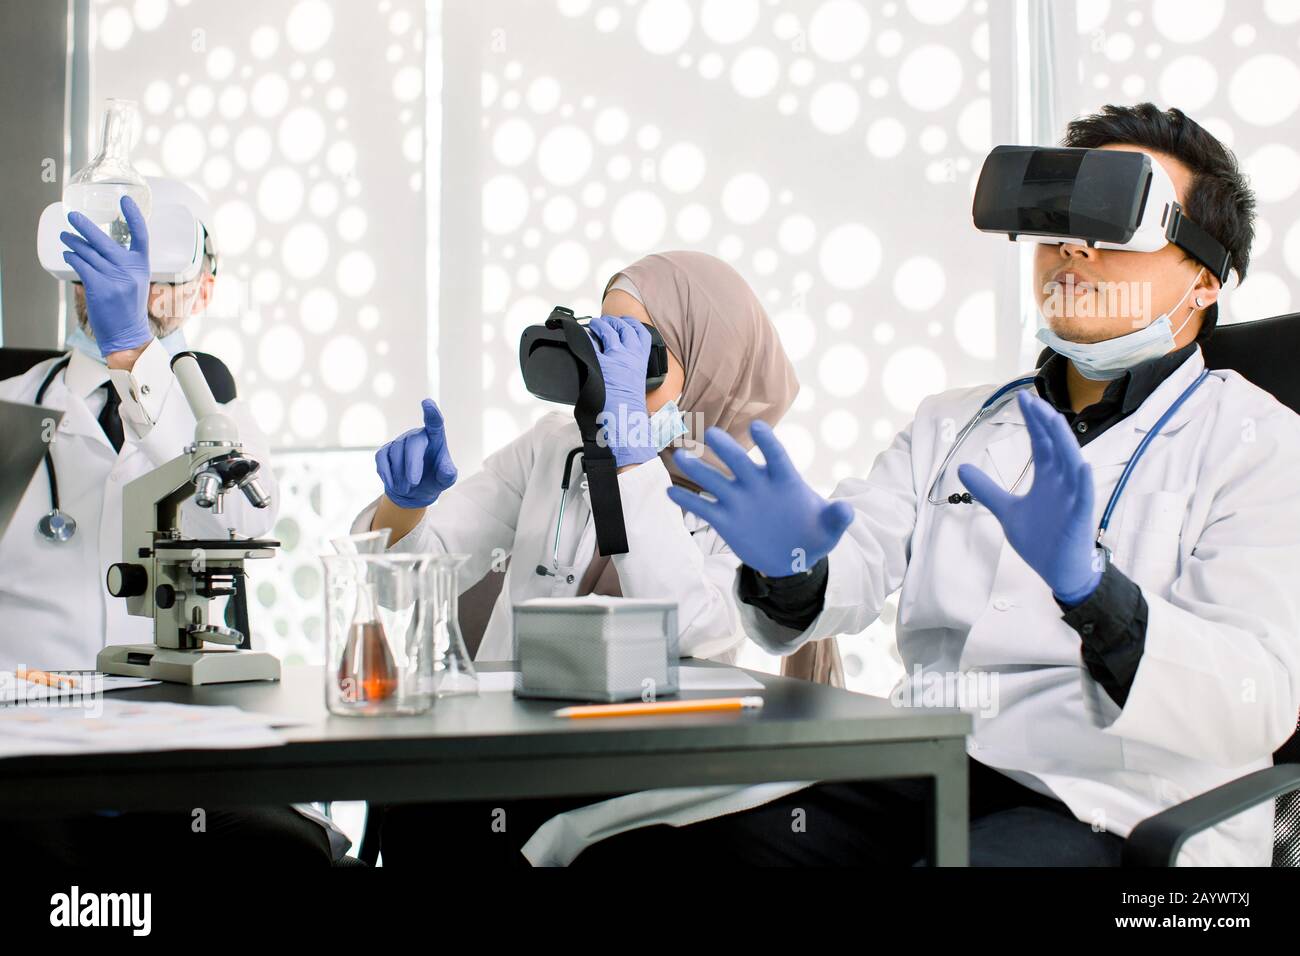 Squadra di scienziati, uomini asiatici e caucasici, donna musulmana che usa occhiali di realtà virtuale per la ricerca scientifica in laboratorio, gesturing mani Foto Stock